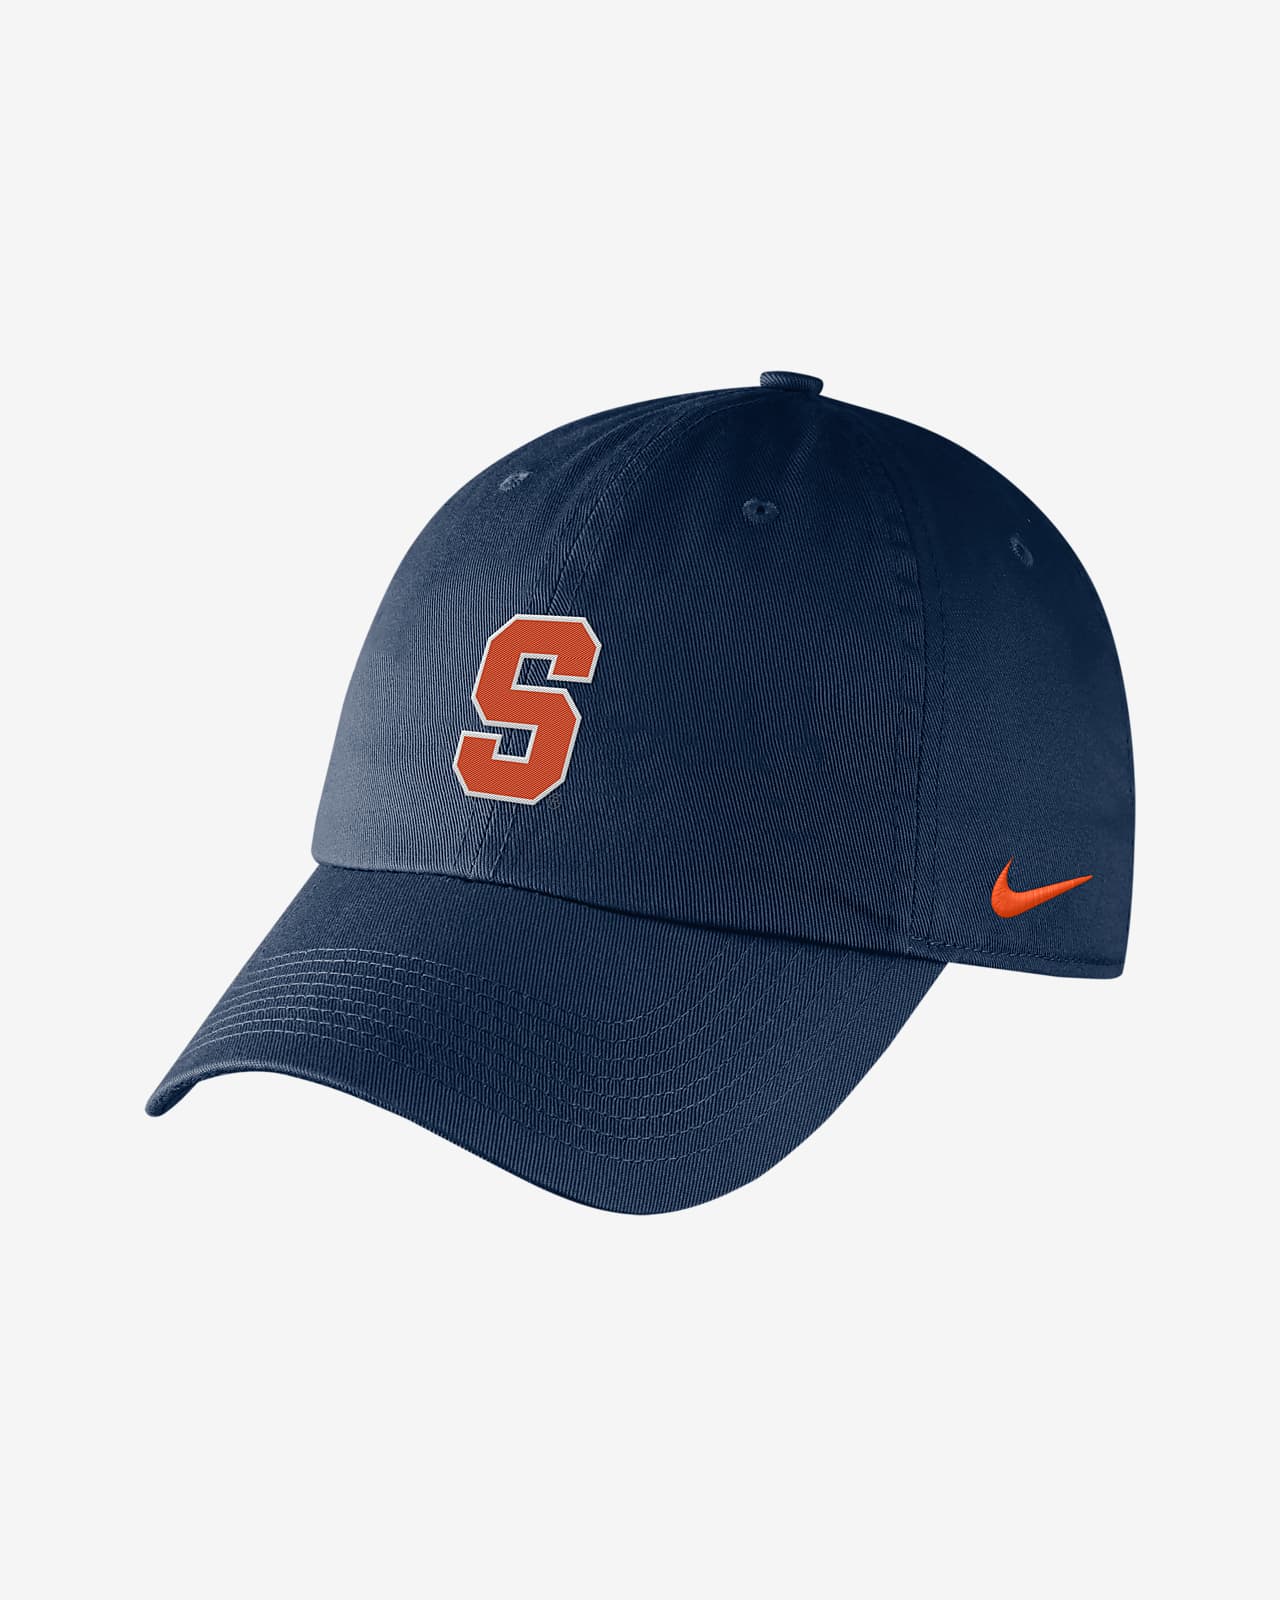 Nike College (Syracuse) Adjustable Logo 